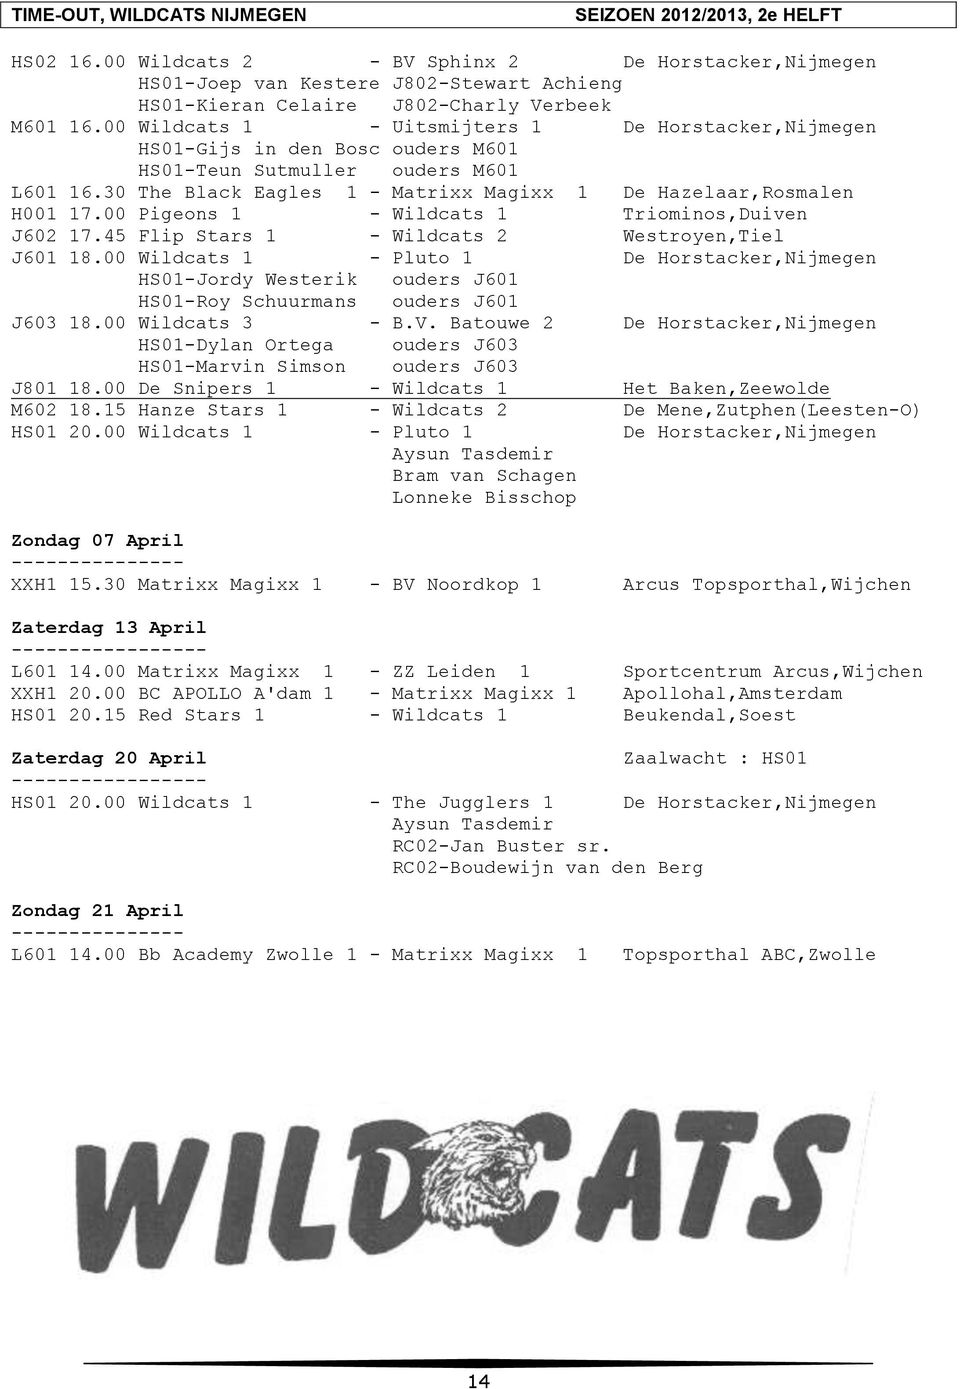 00 Pigeons 1 - Wildcats 1 Triominos,Duiven J602 17.45 Flip Stars 1 - Wildcats 2 Westroyen,Tiel J601 18.